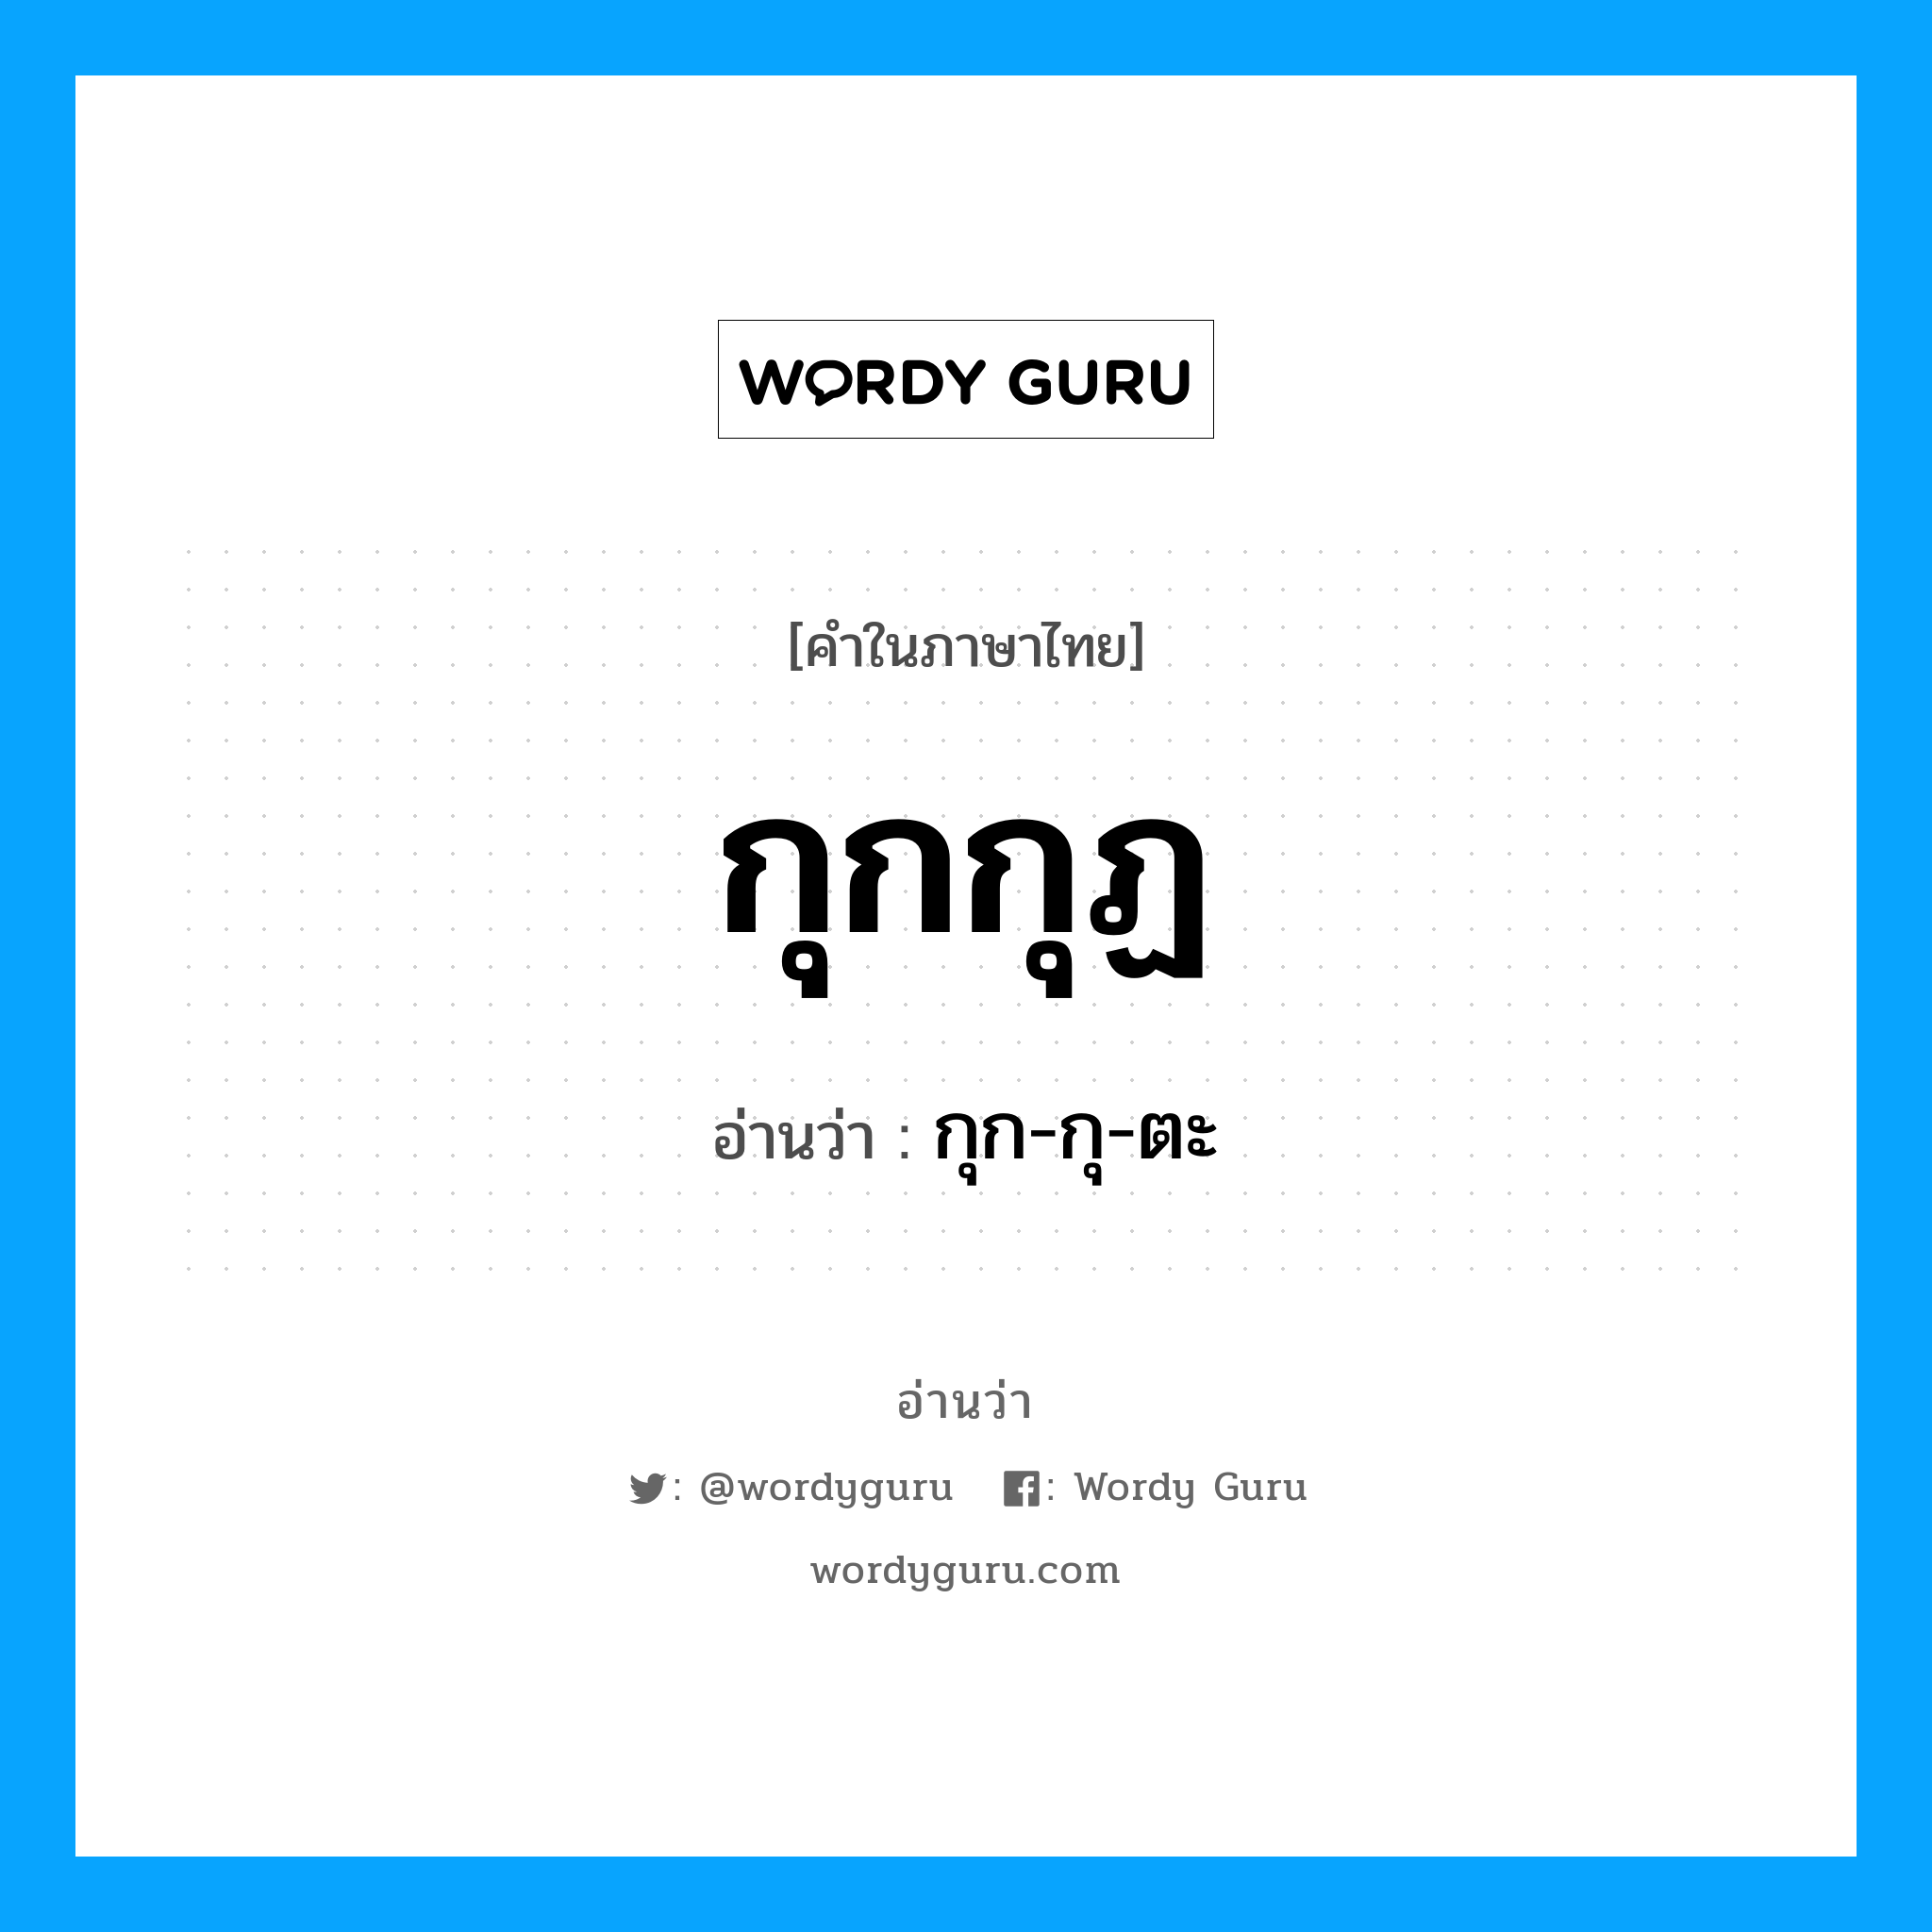 กุก-กุ-ตะ เป็นคำอ่านของคำไหน?, คำในภาษาไทย กุก-กุ-ตะ อ่านว่า กุกกุฏ